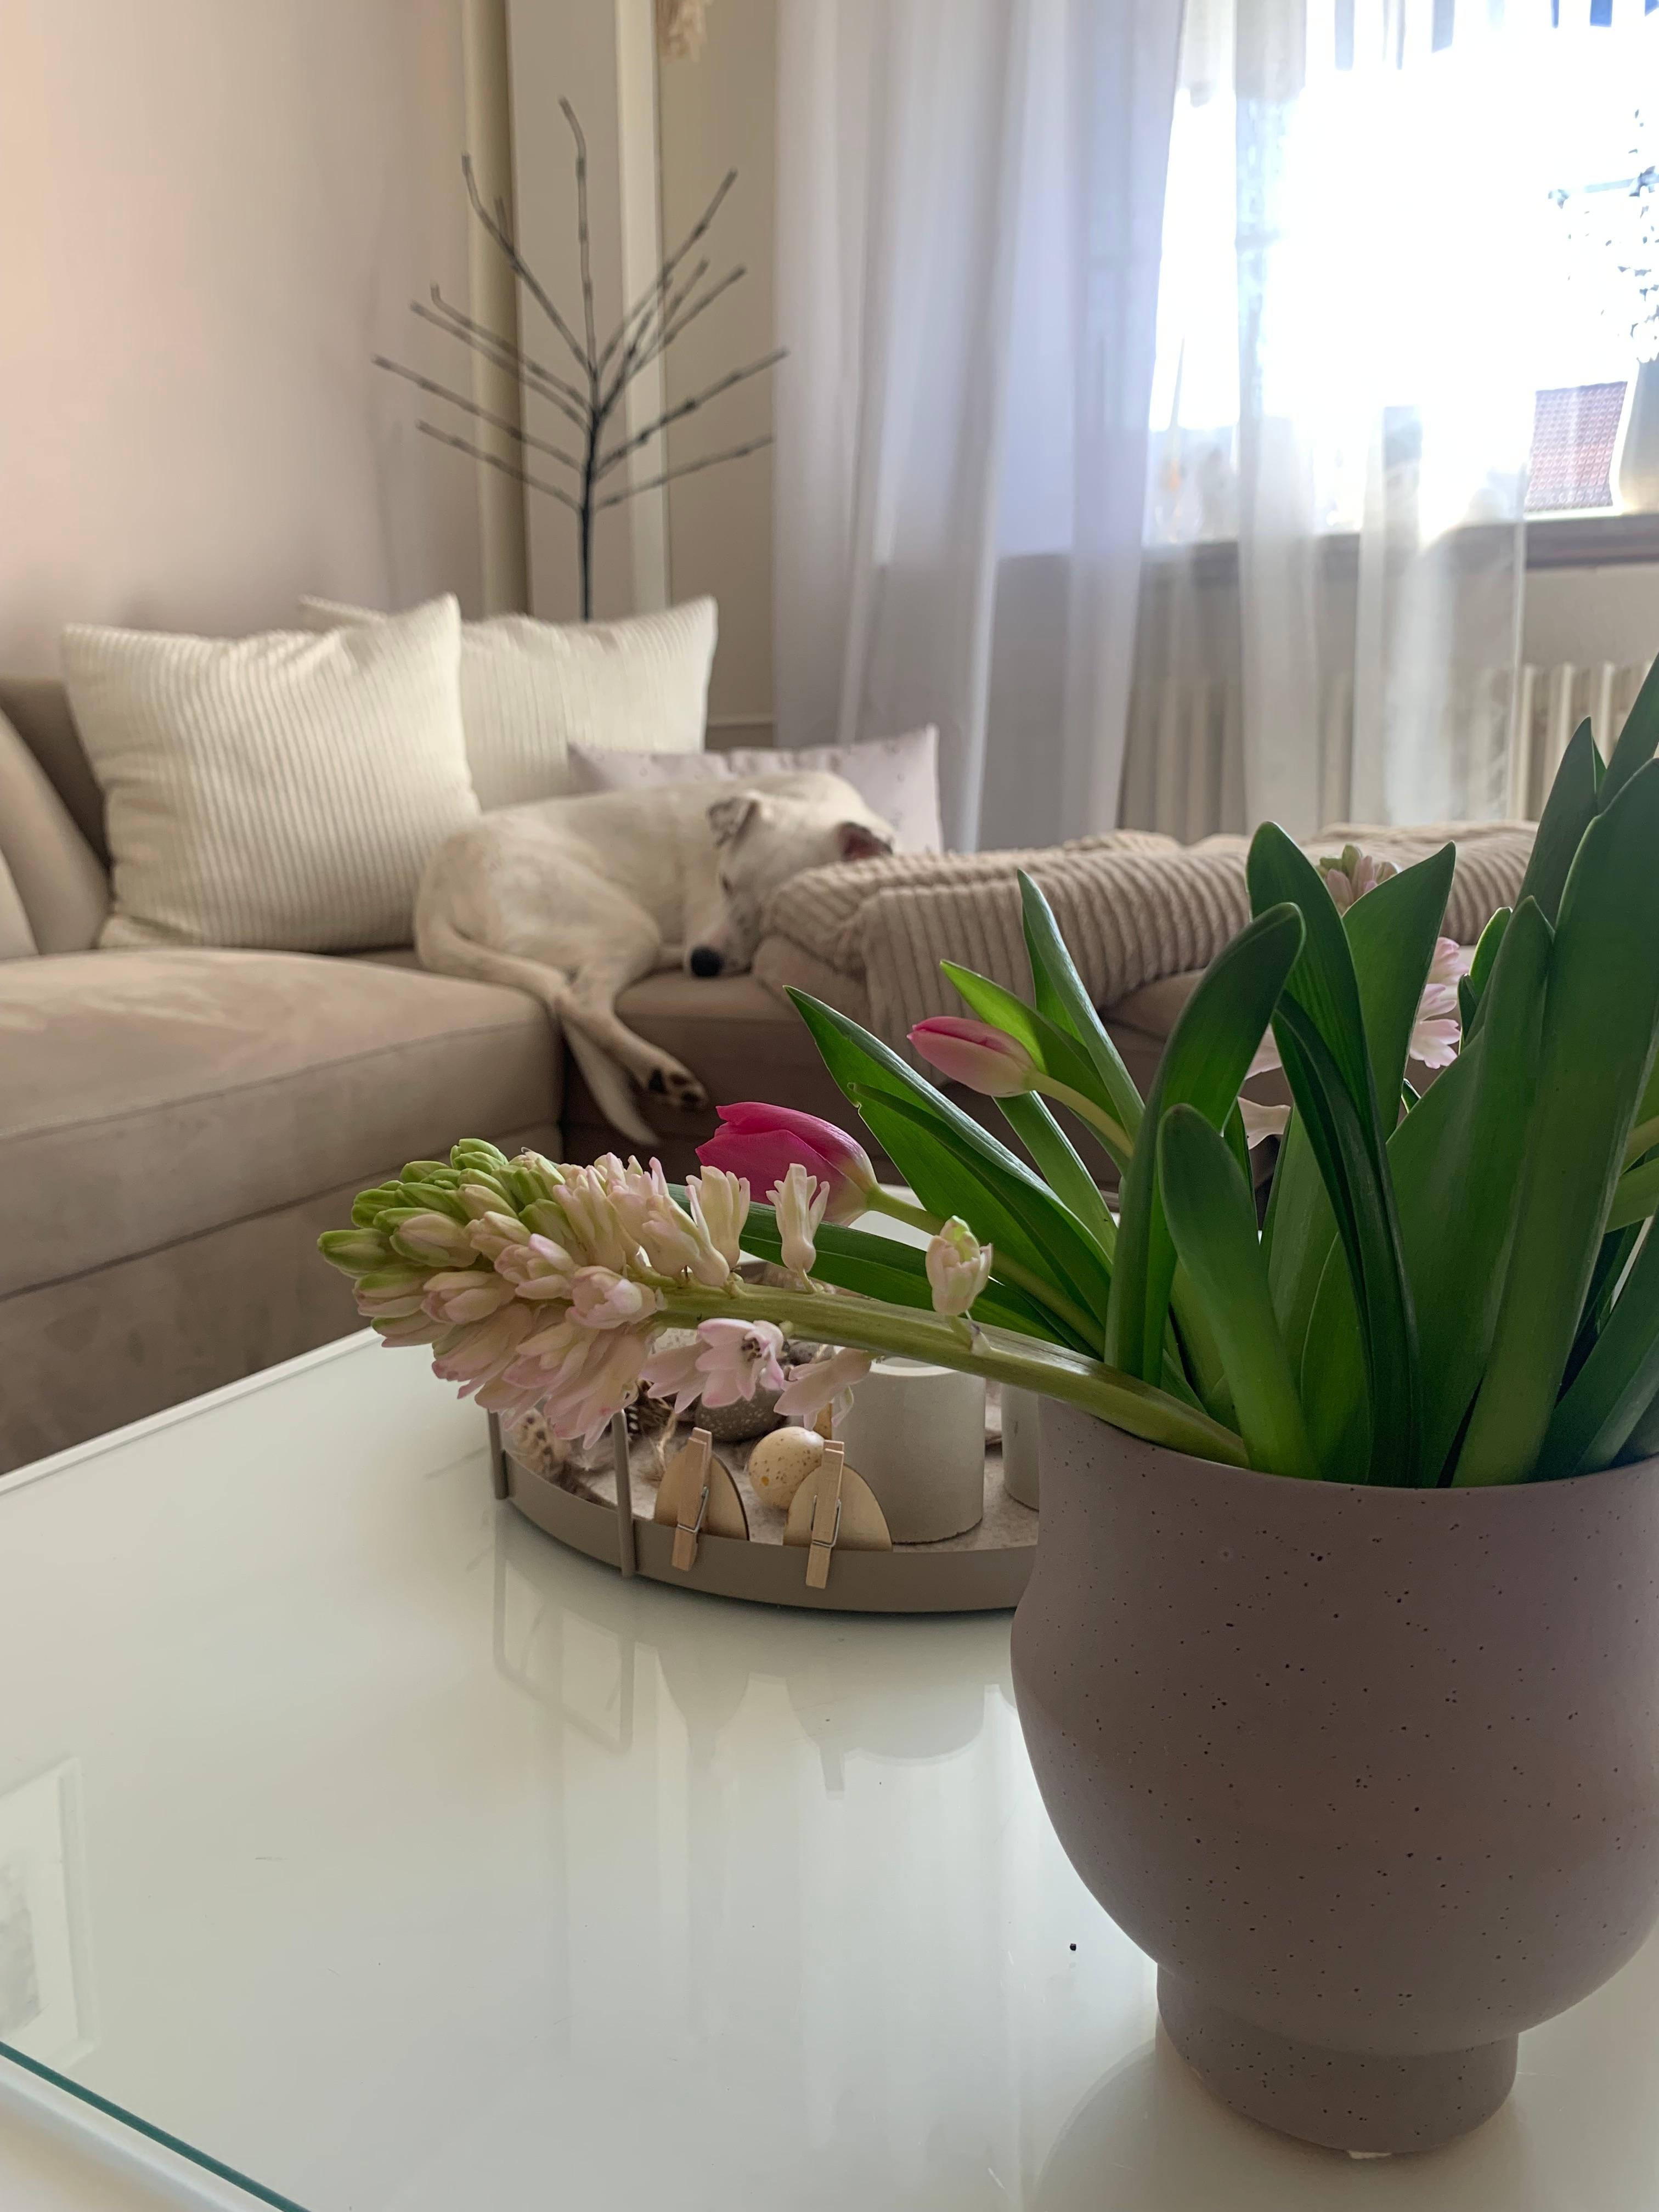 Nap Time 🐾🤍

#wohnzimmer #couch #helleswohnen #couchtisch #kissen #flower #vase #springtime #doglove #glas #kerze #plaid 